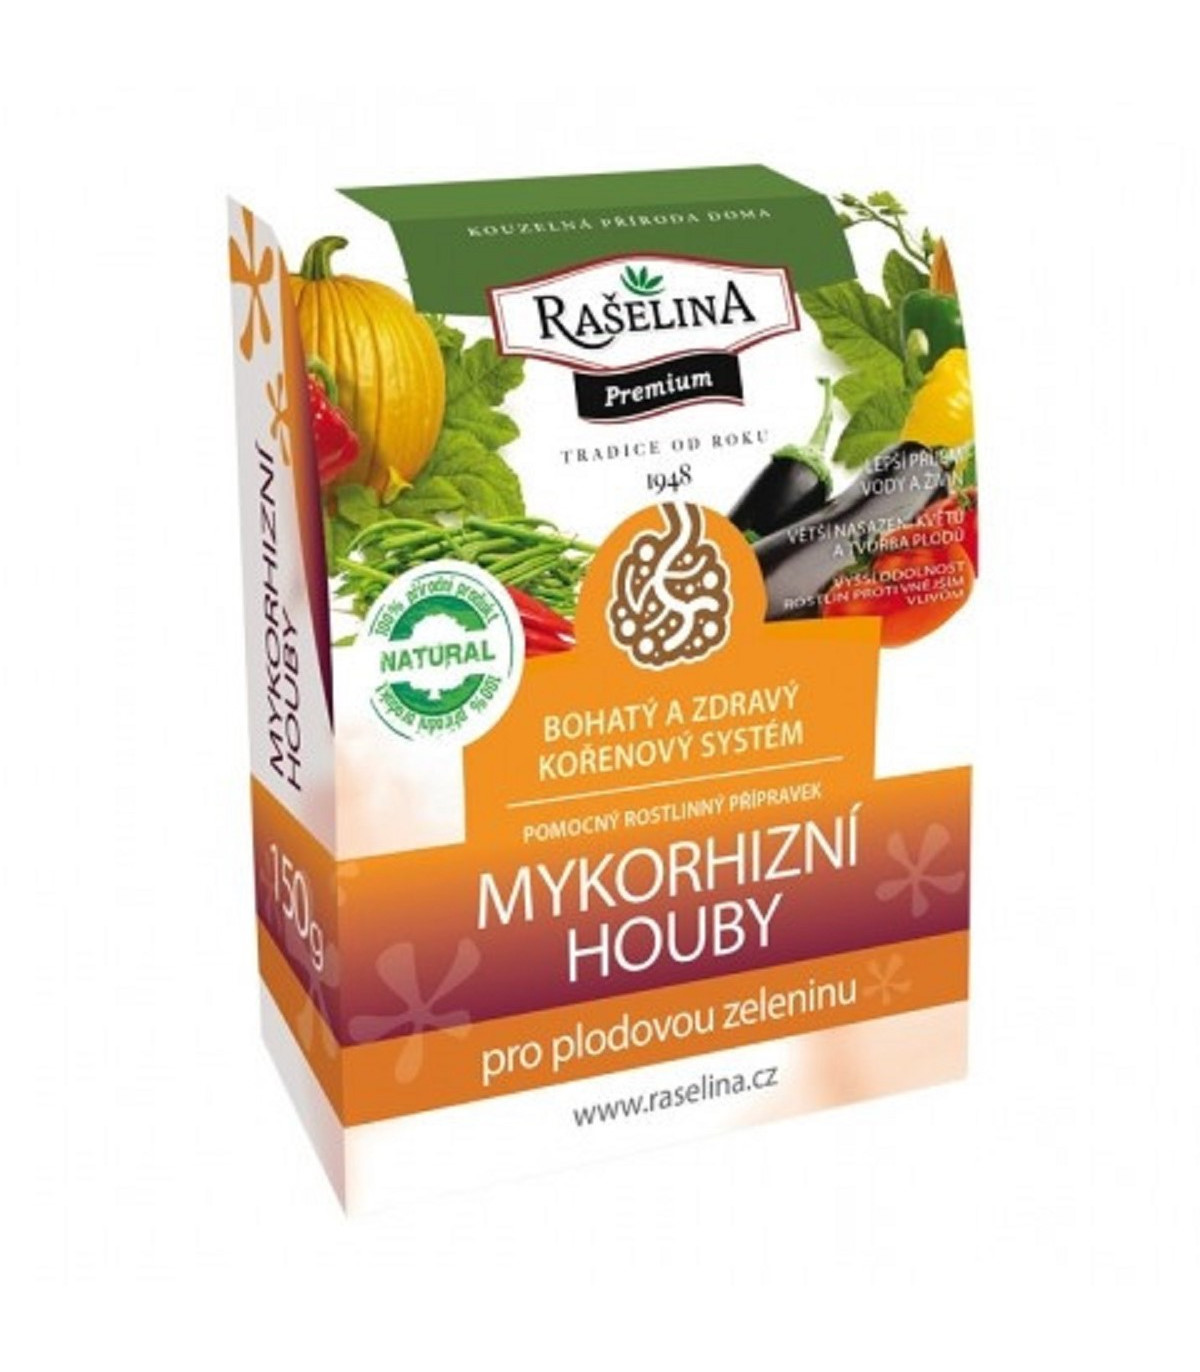 Mykorhizní houby - Rašelina - mykorhizní přípravek pro plodovou zeleninu - 150 g